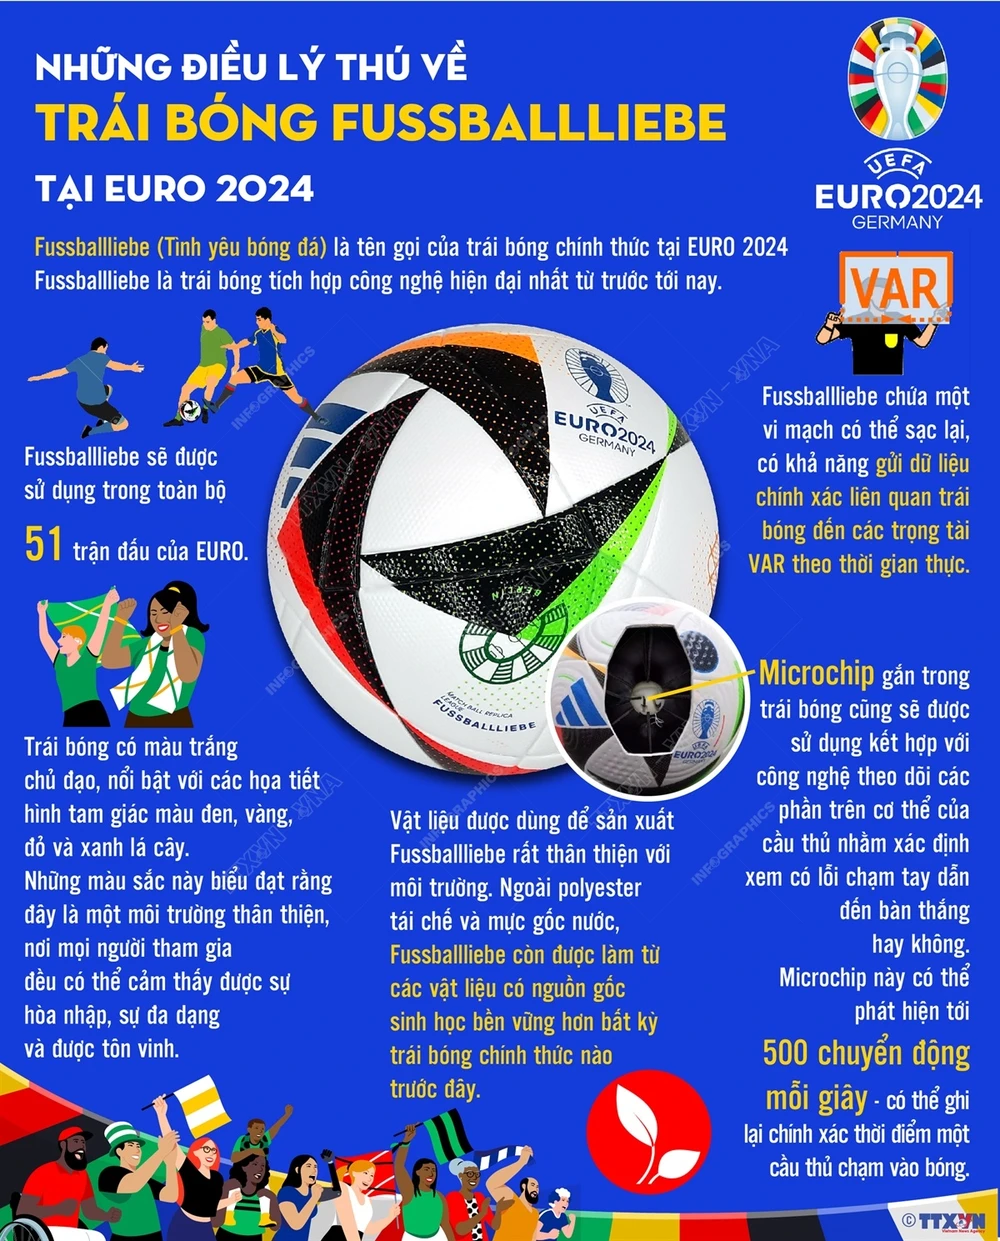 Bí mật của trái bóng được sử dụng tại EURO 2024 - Ảnh 1